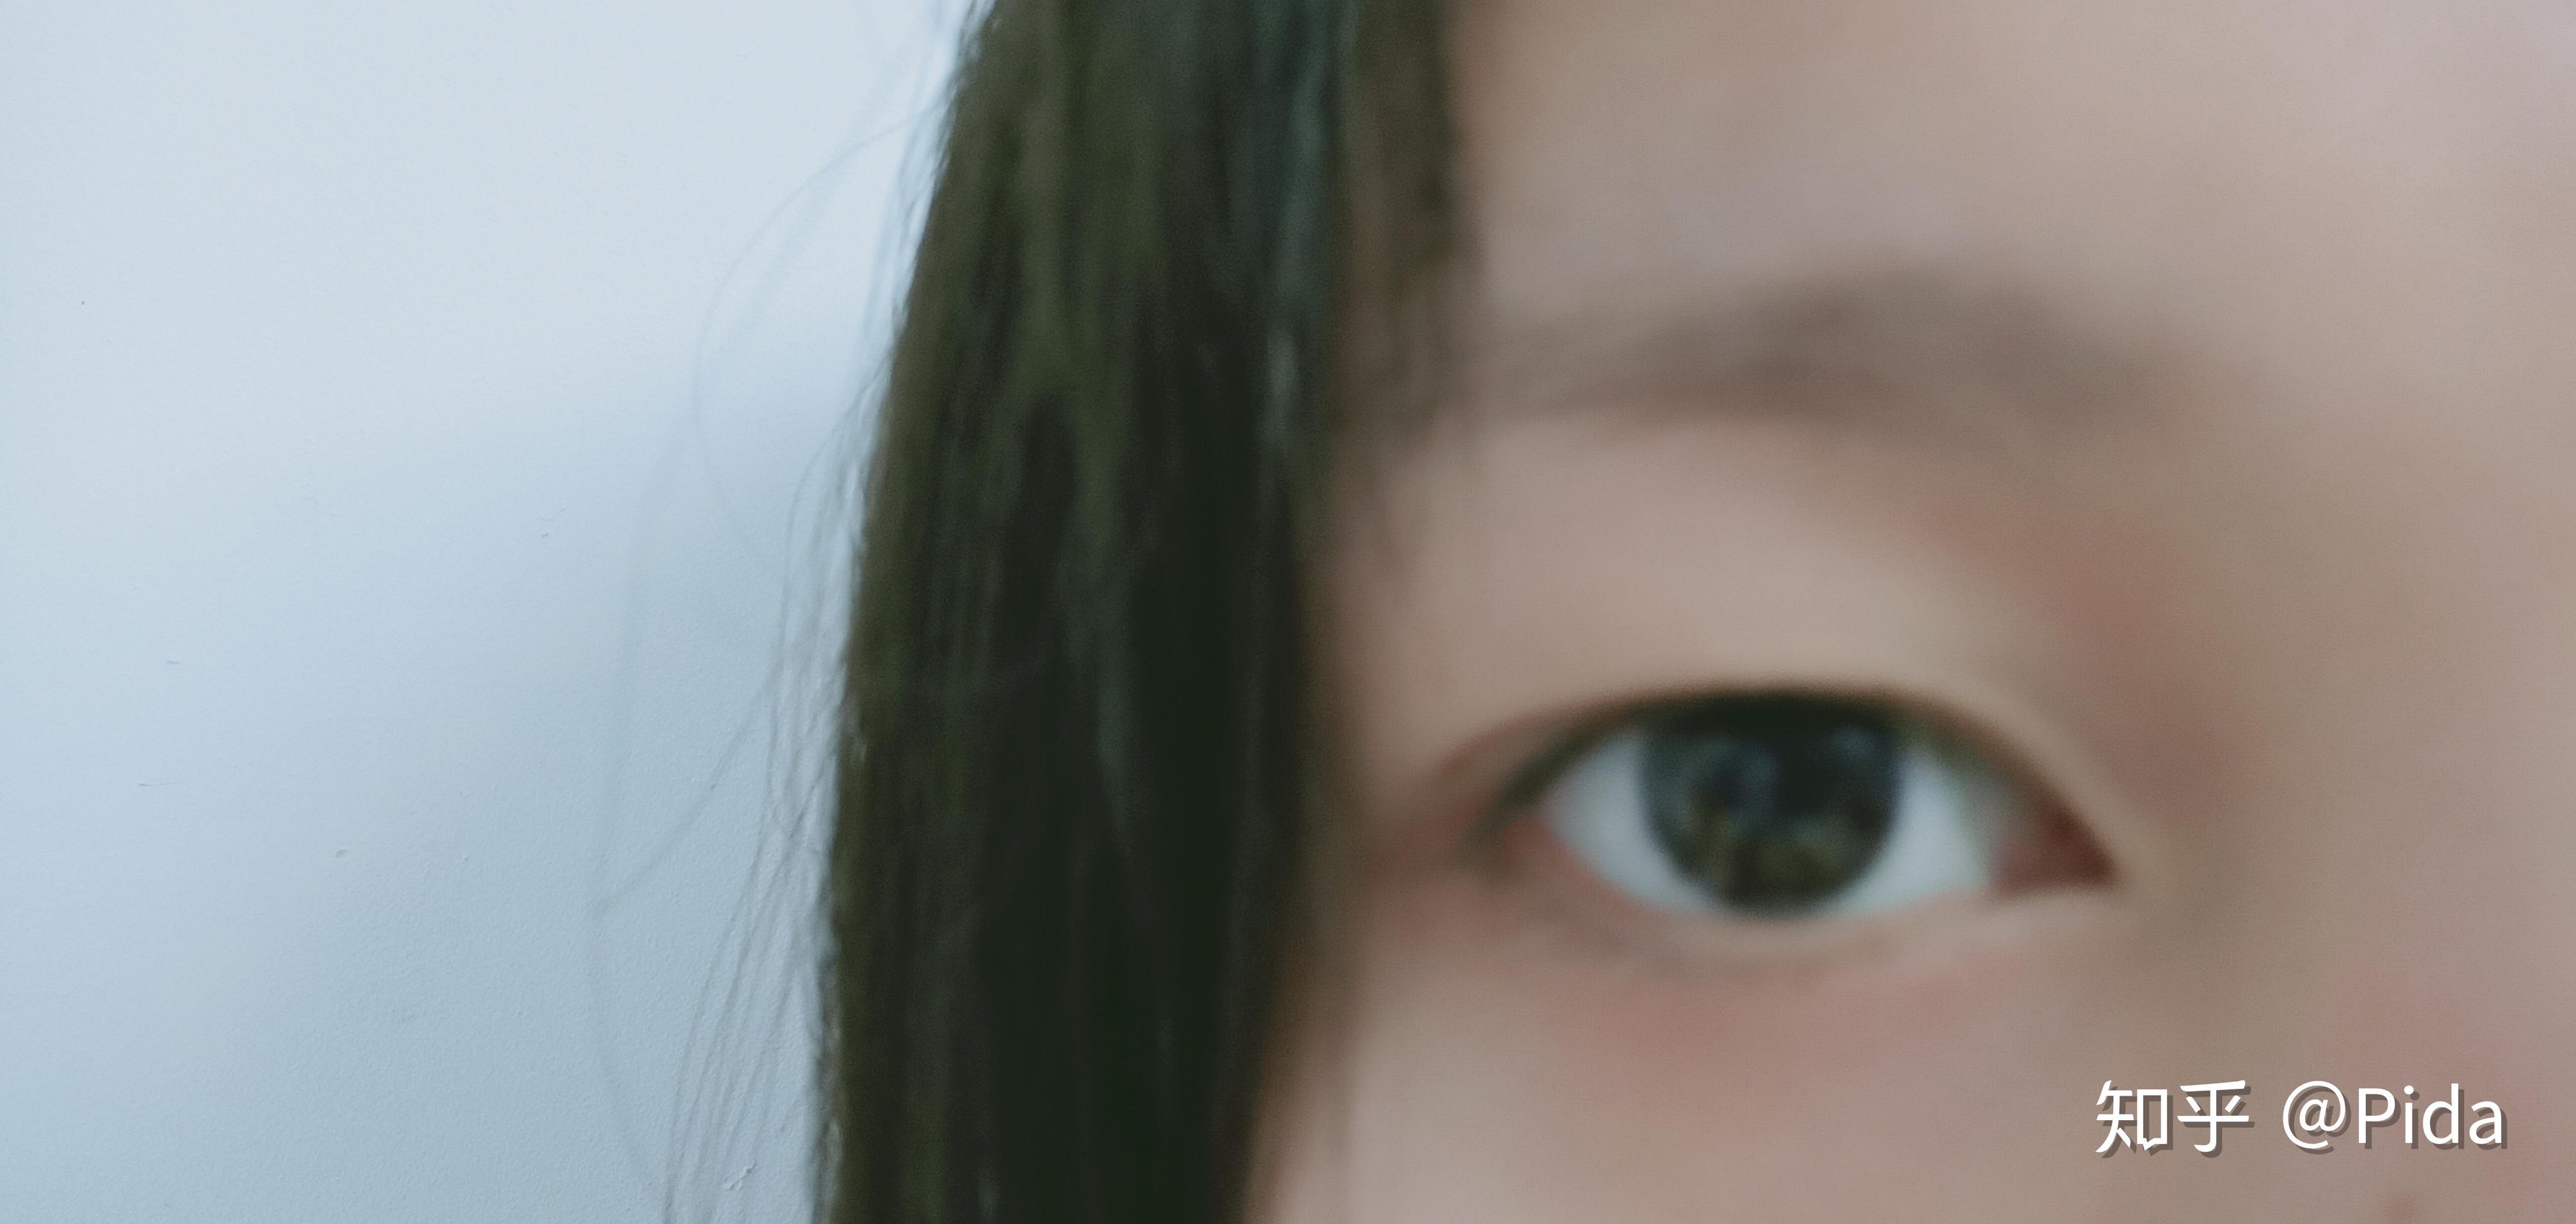 【双眼皮案例】切开双眼皮+开眼角 术后三个月效果分享 - 青岛新闻网